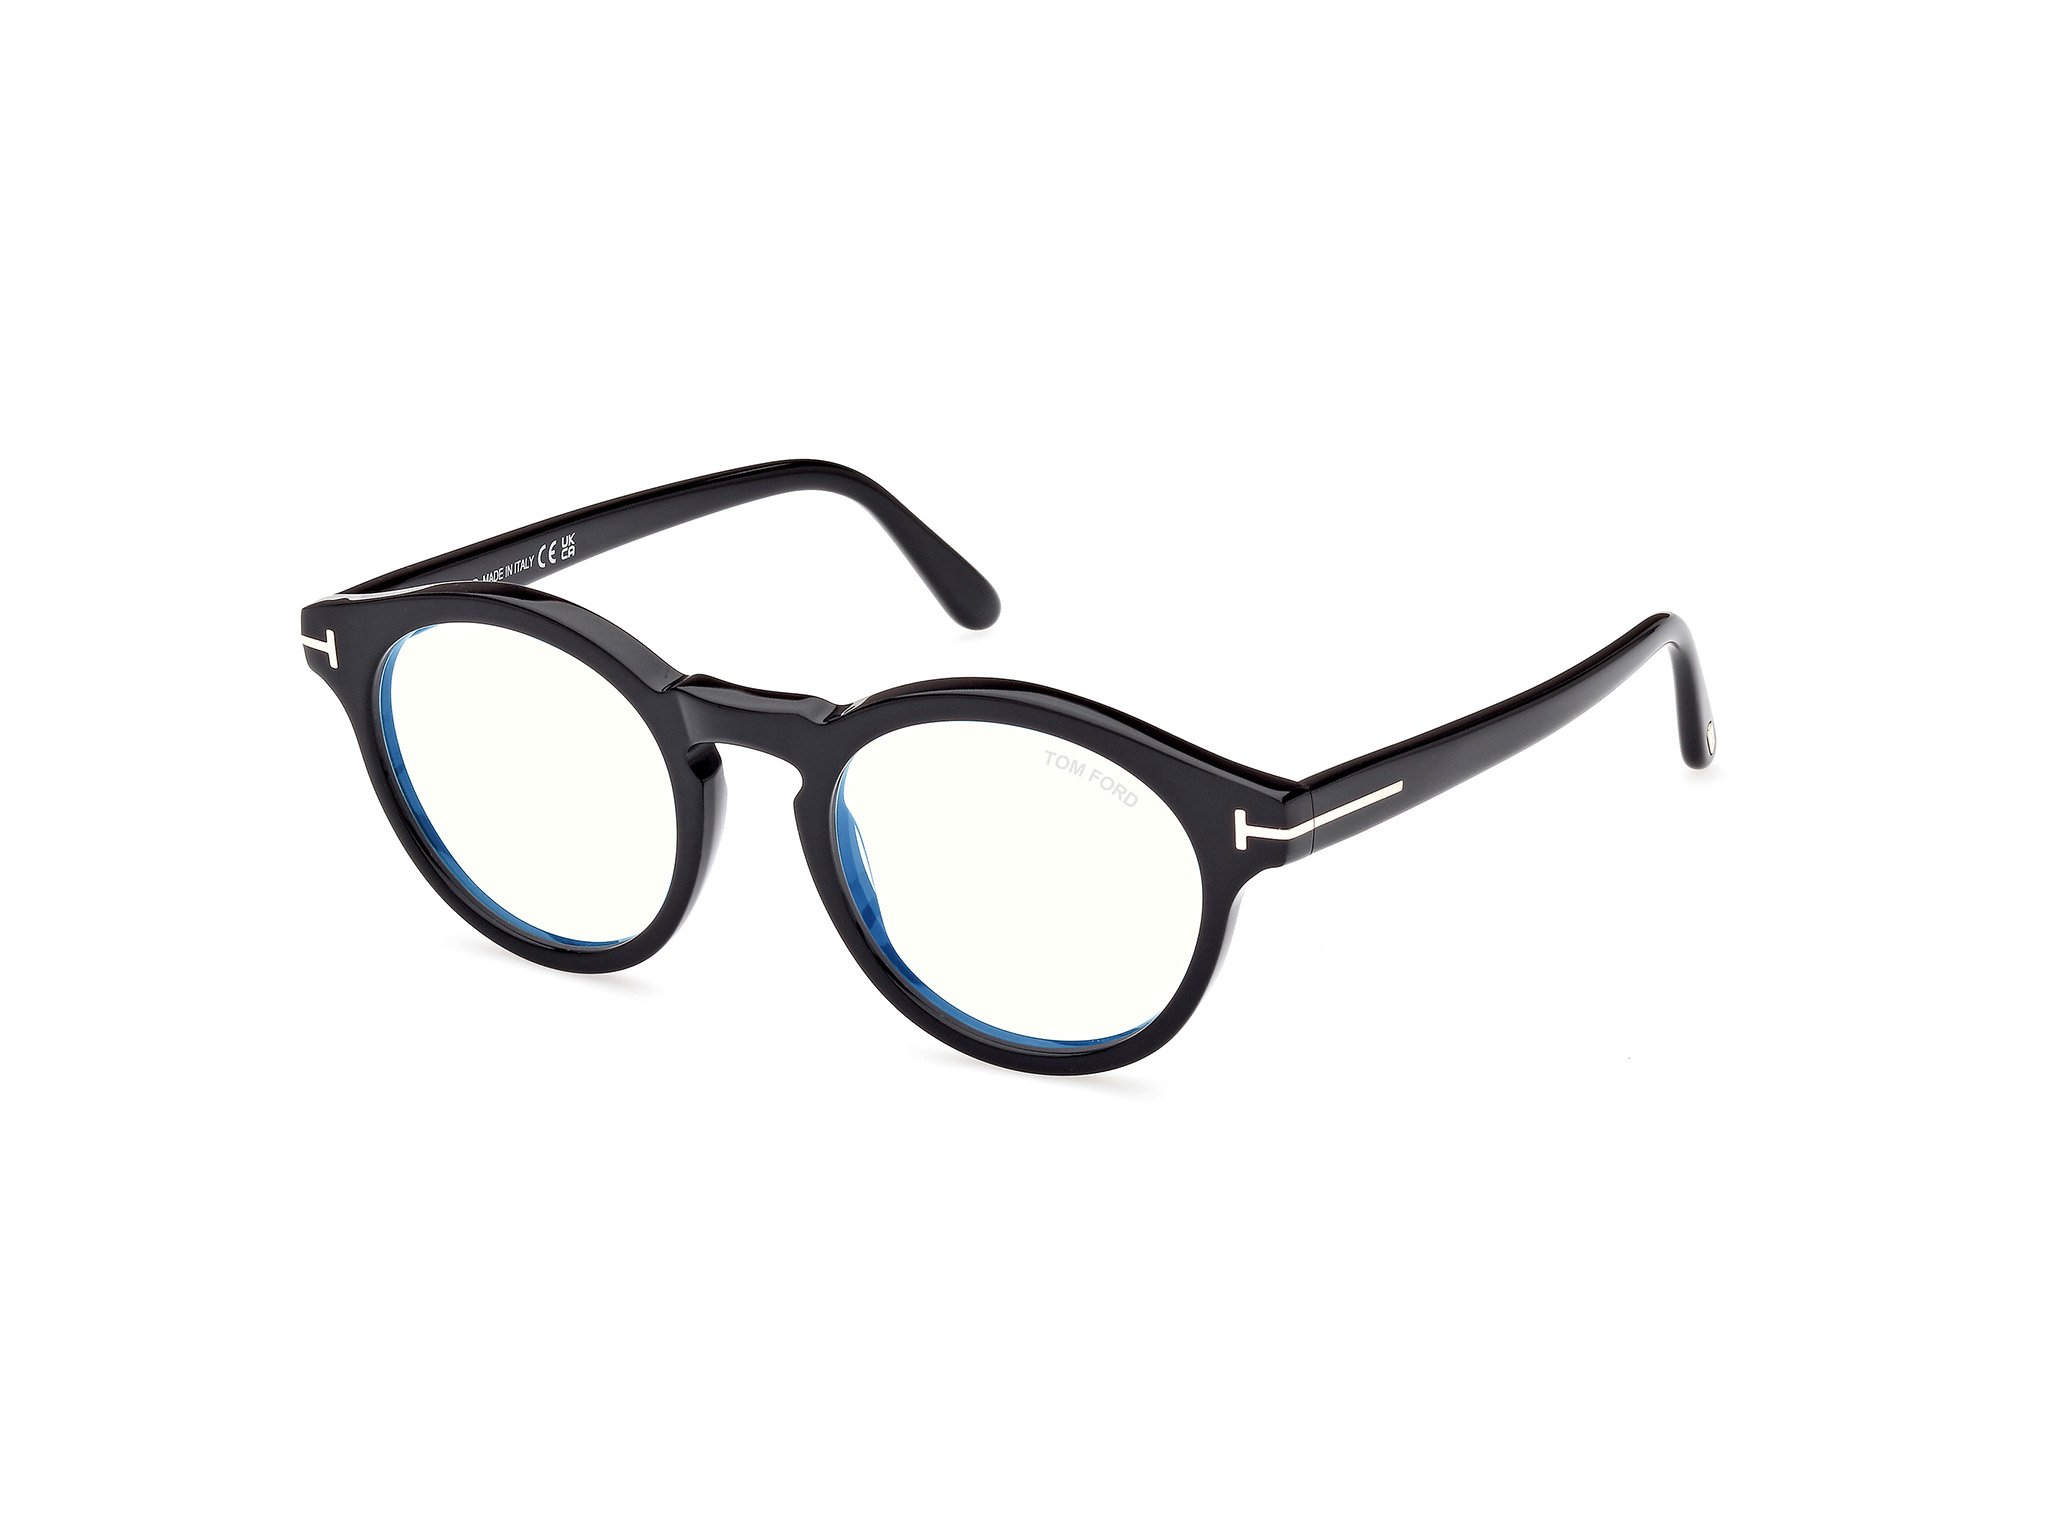 Das Bild zeigt die Korrektionsbrille FT5887-B 001 von der Marke Tom Ford in schwarz.